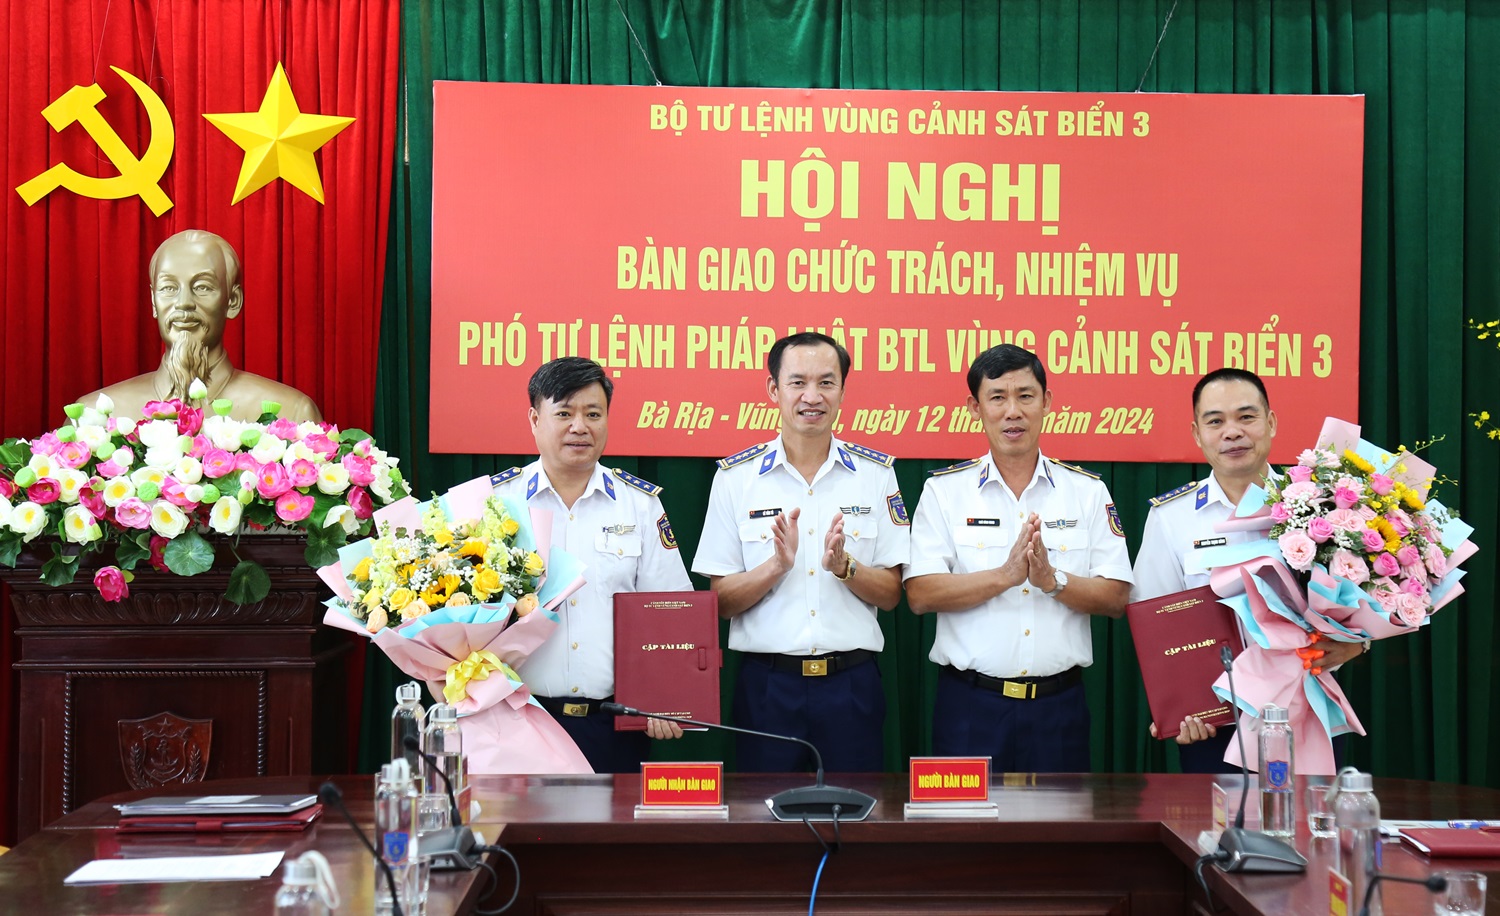 Tư lệnh, Chính ủy Vùng Cảnh sát biển 3 tặng hoa chúc mừng Đại tá Nguyễn Trịnh Hùng và Thượng tá Nguyễn Đức Hiếu